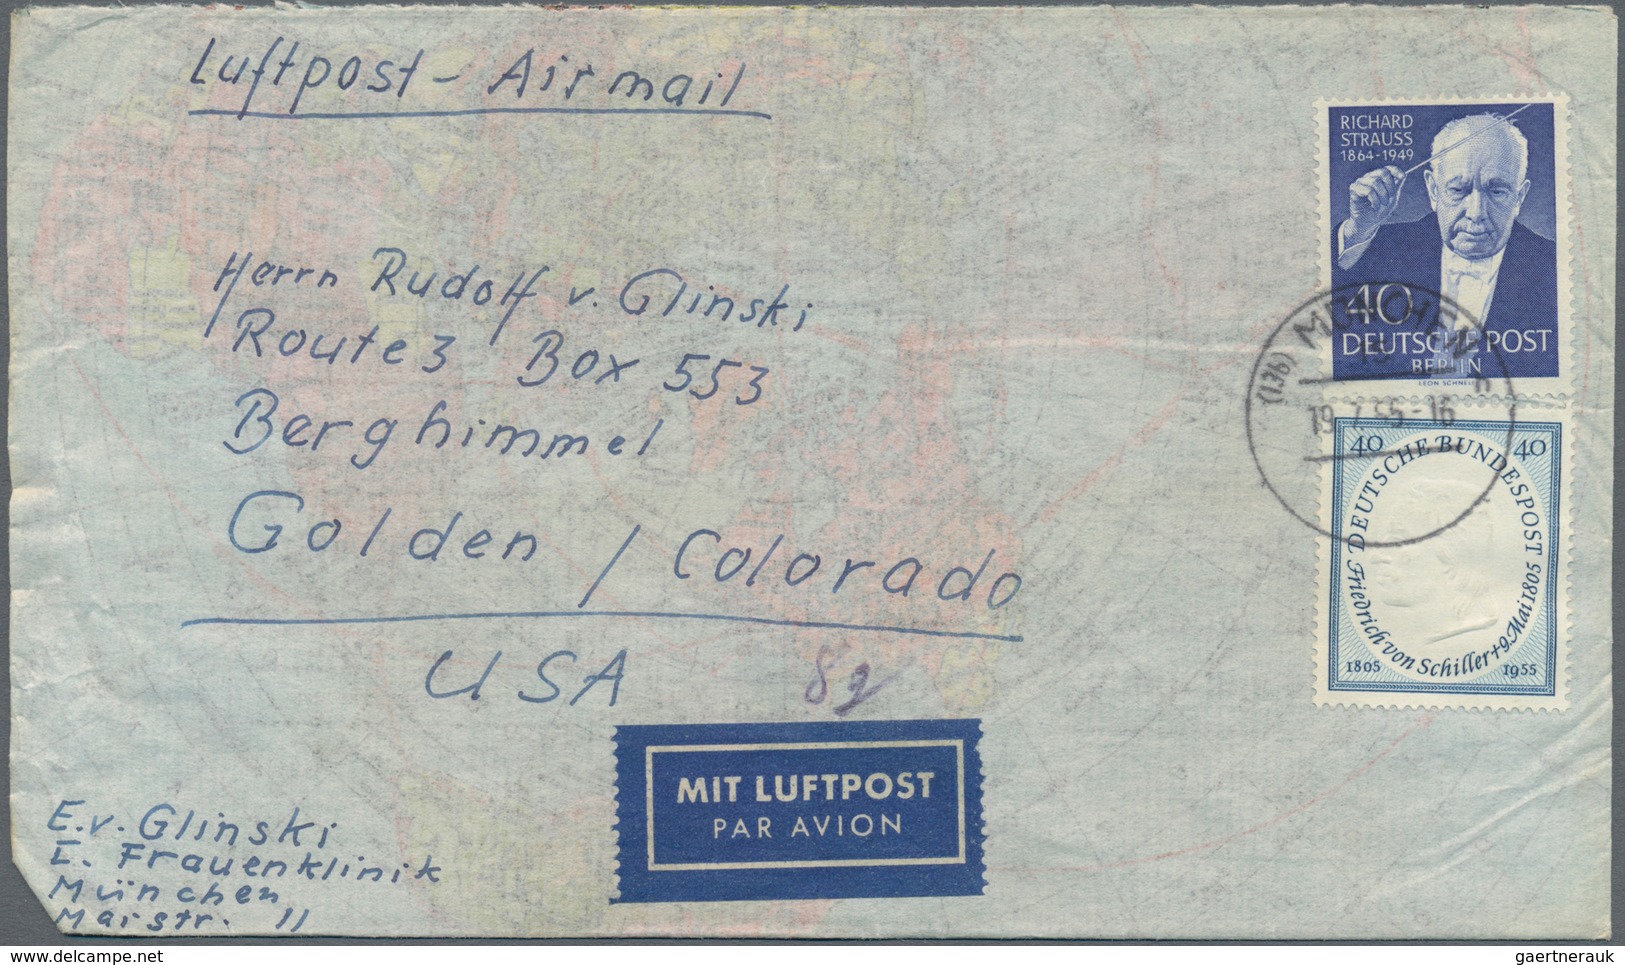 Berlin: 1952/1960, vielseitiger Posten von ca. 195 Briefen und Karten aus alter Familien-Korresponde